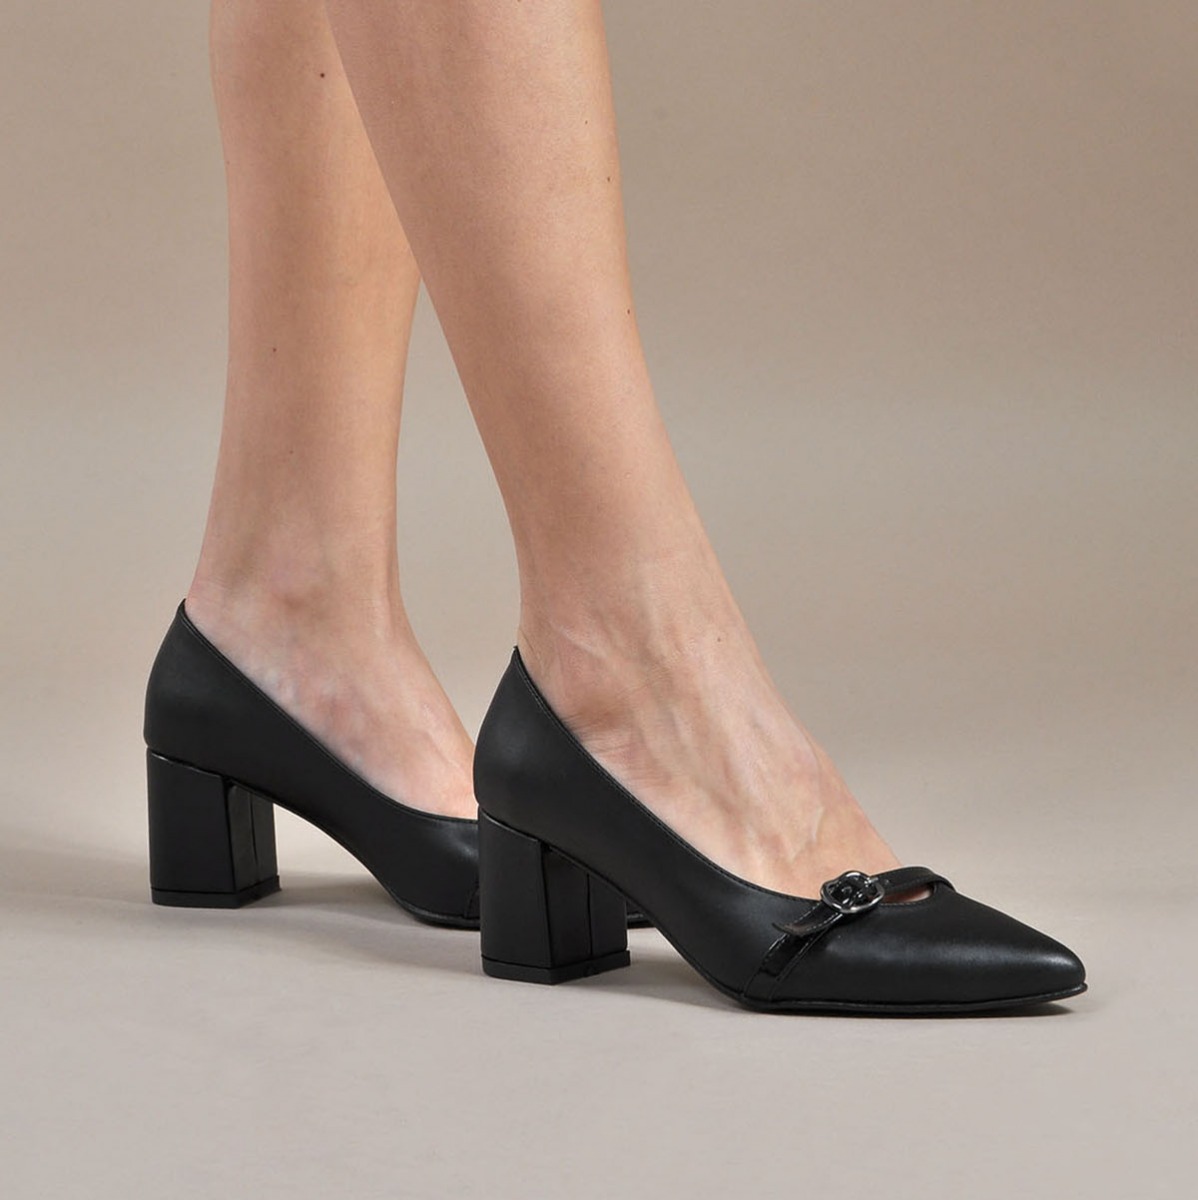 Flo Kadın  Siyah-Cilt Klasik Topuklu Ayakkabı VZN19-110K. 1